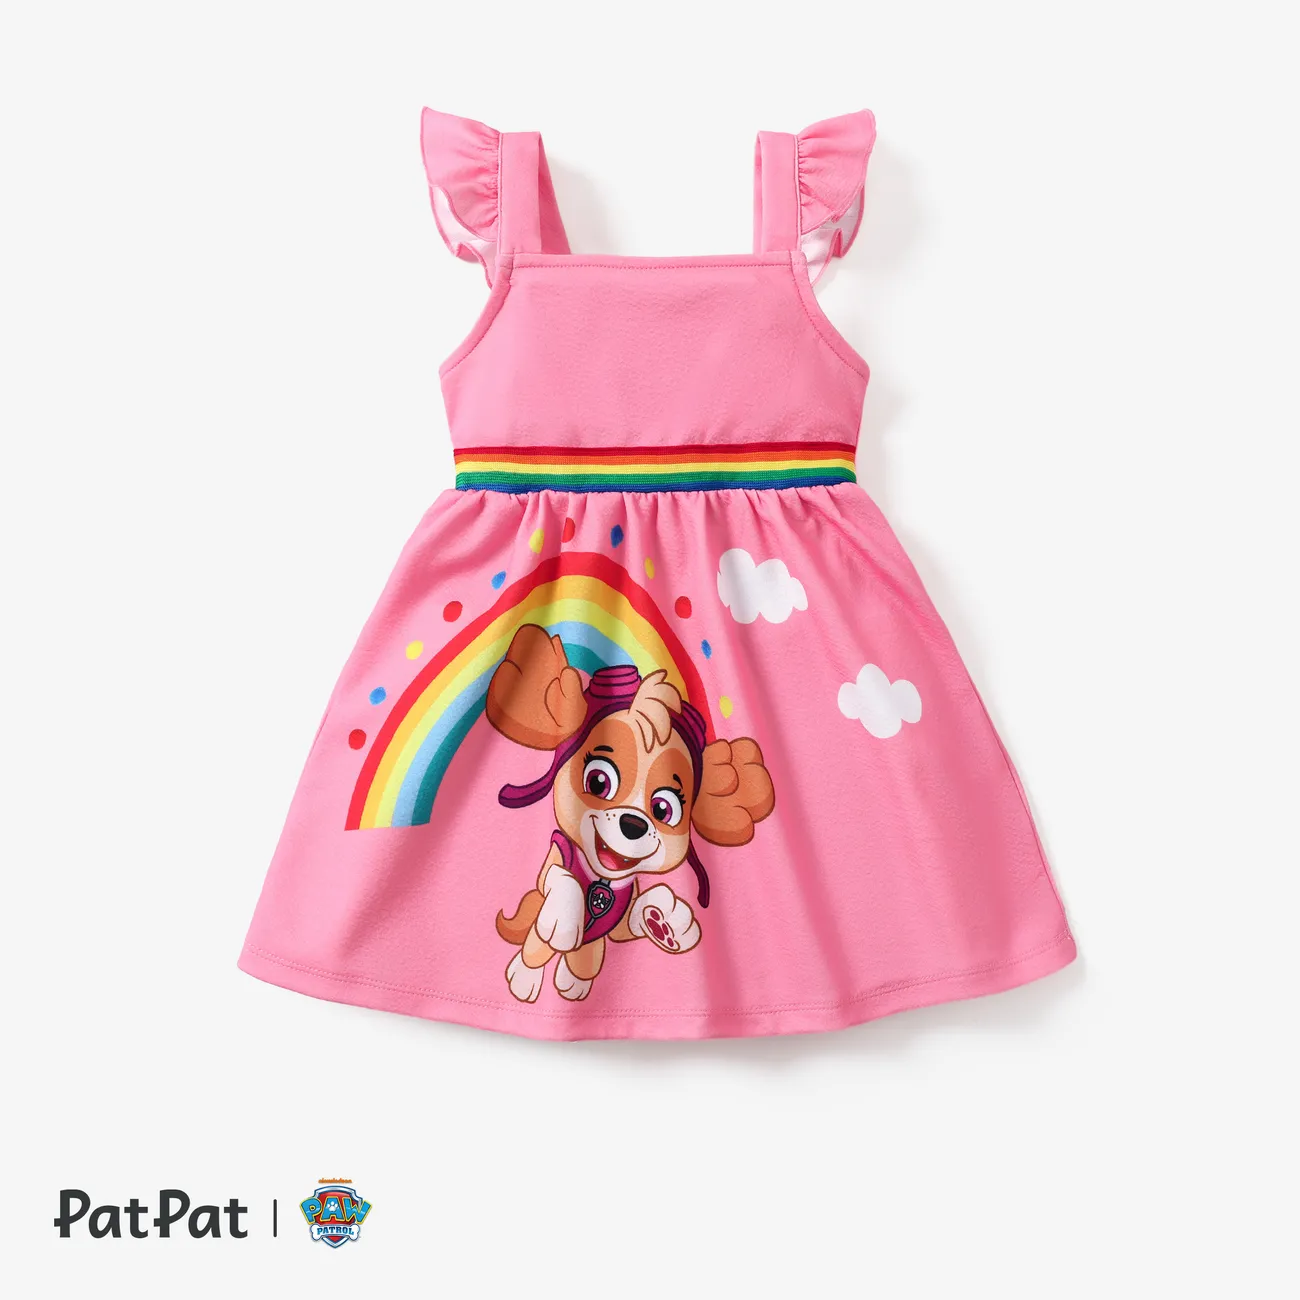 Patrulha Canina Criança Menina Entrançado Infantil Vestidos Rosa big image 1